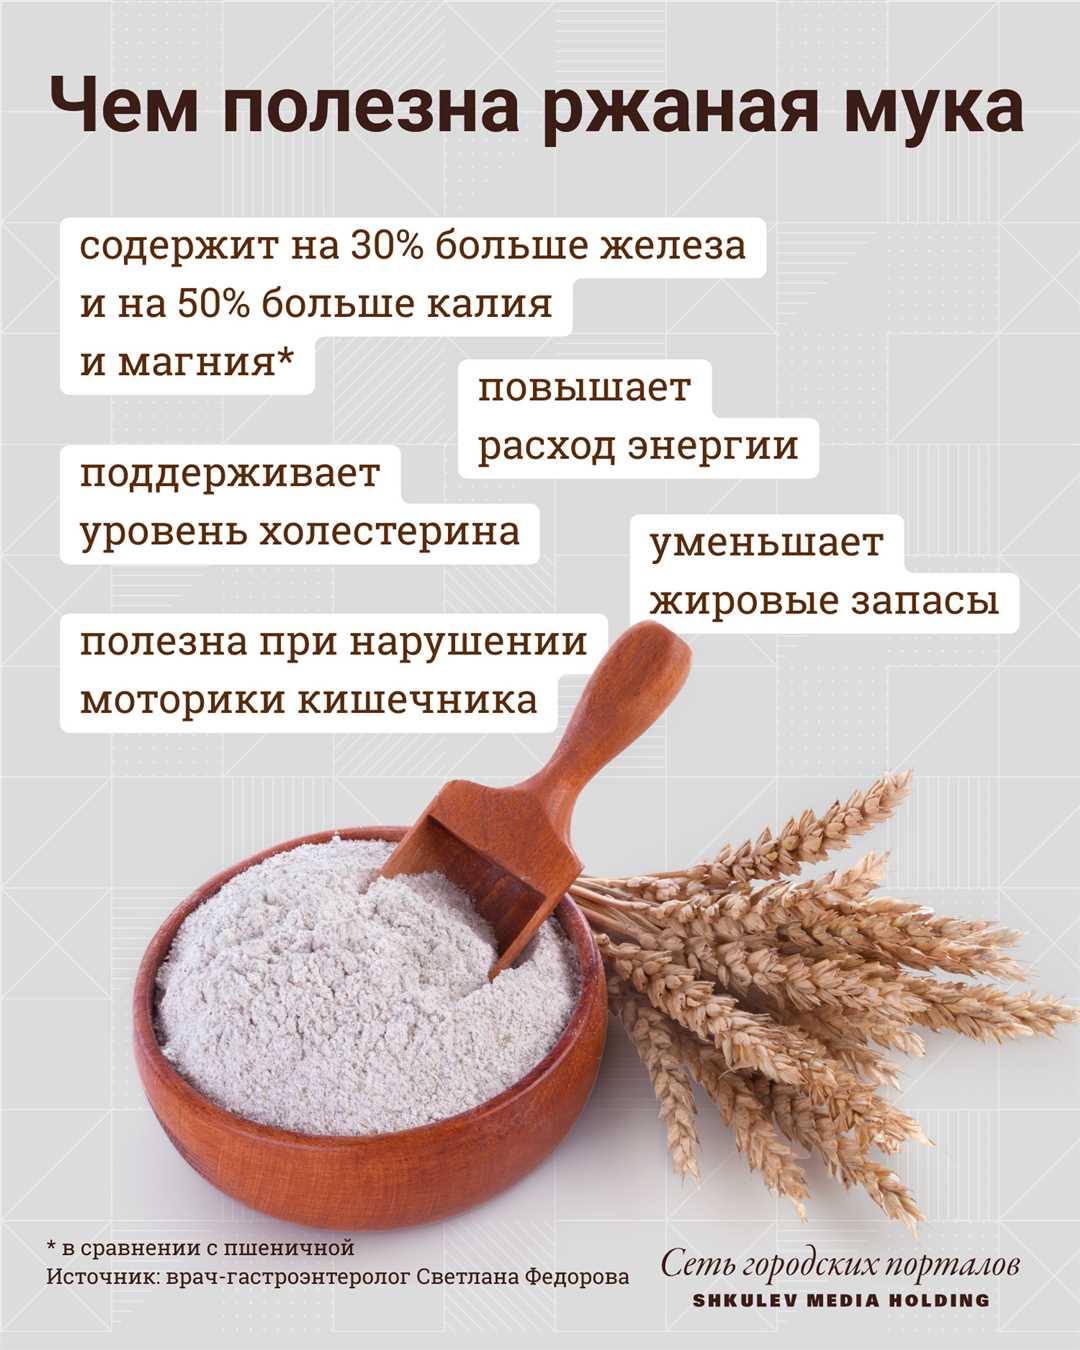 Пшеничная мука: правильный выбор и использование